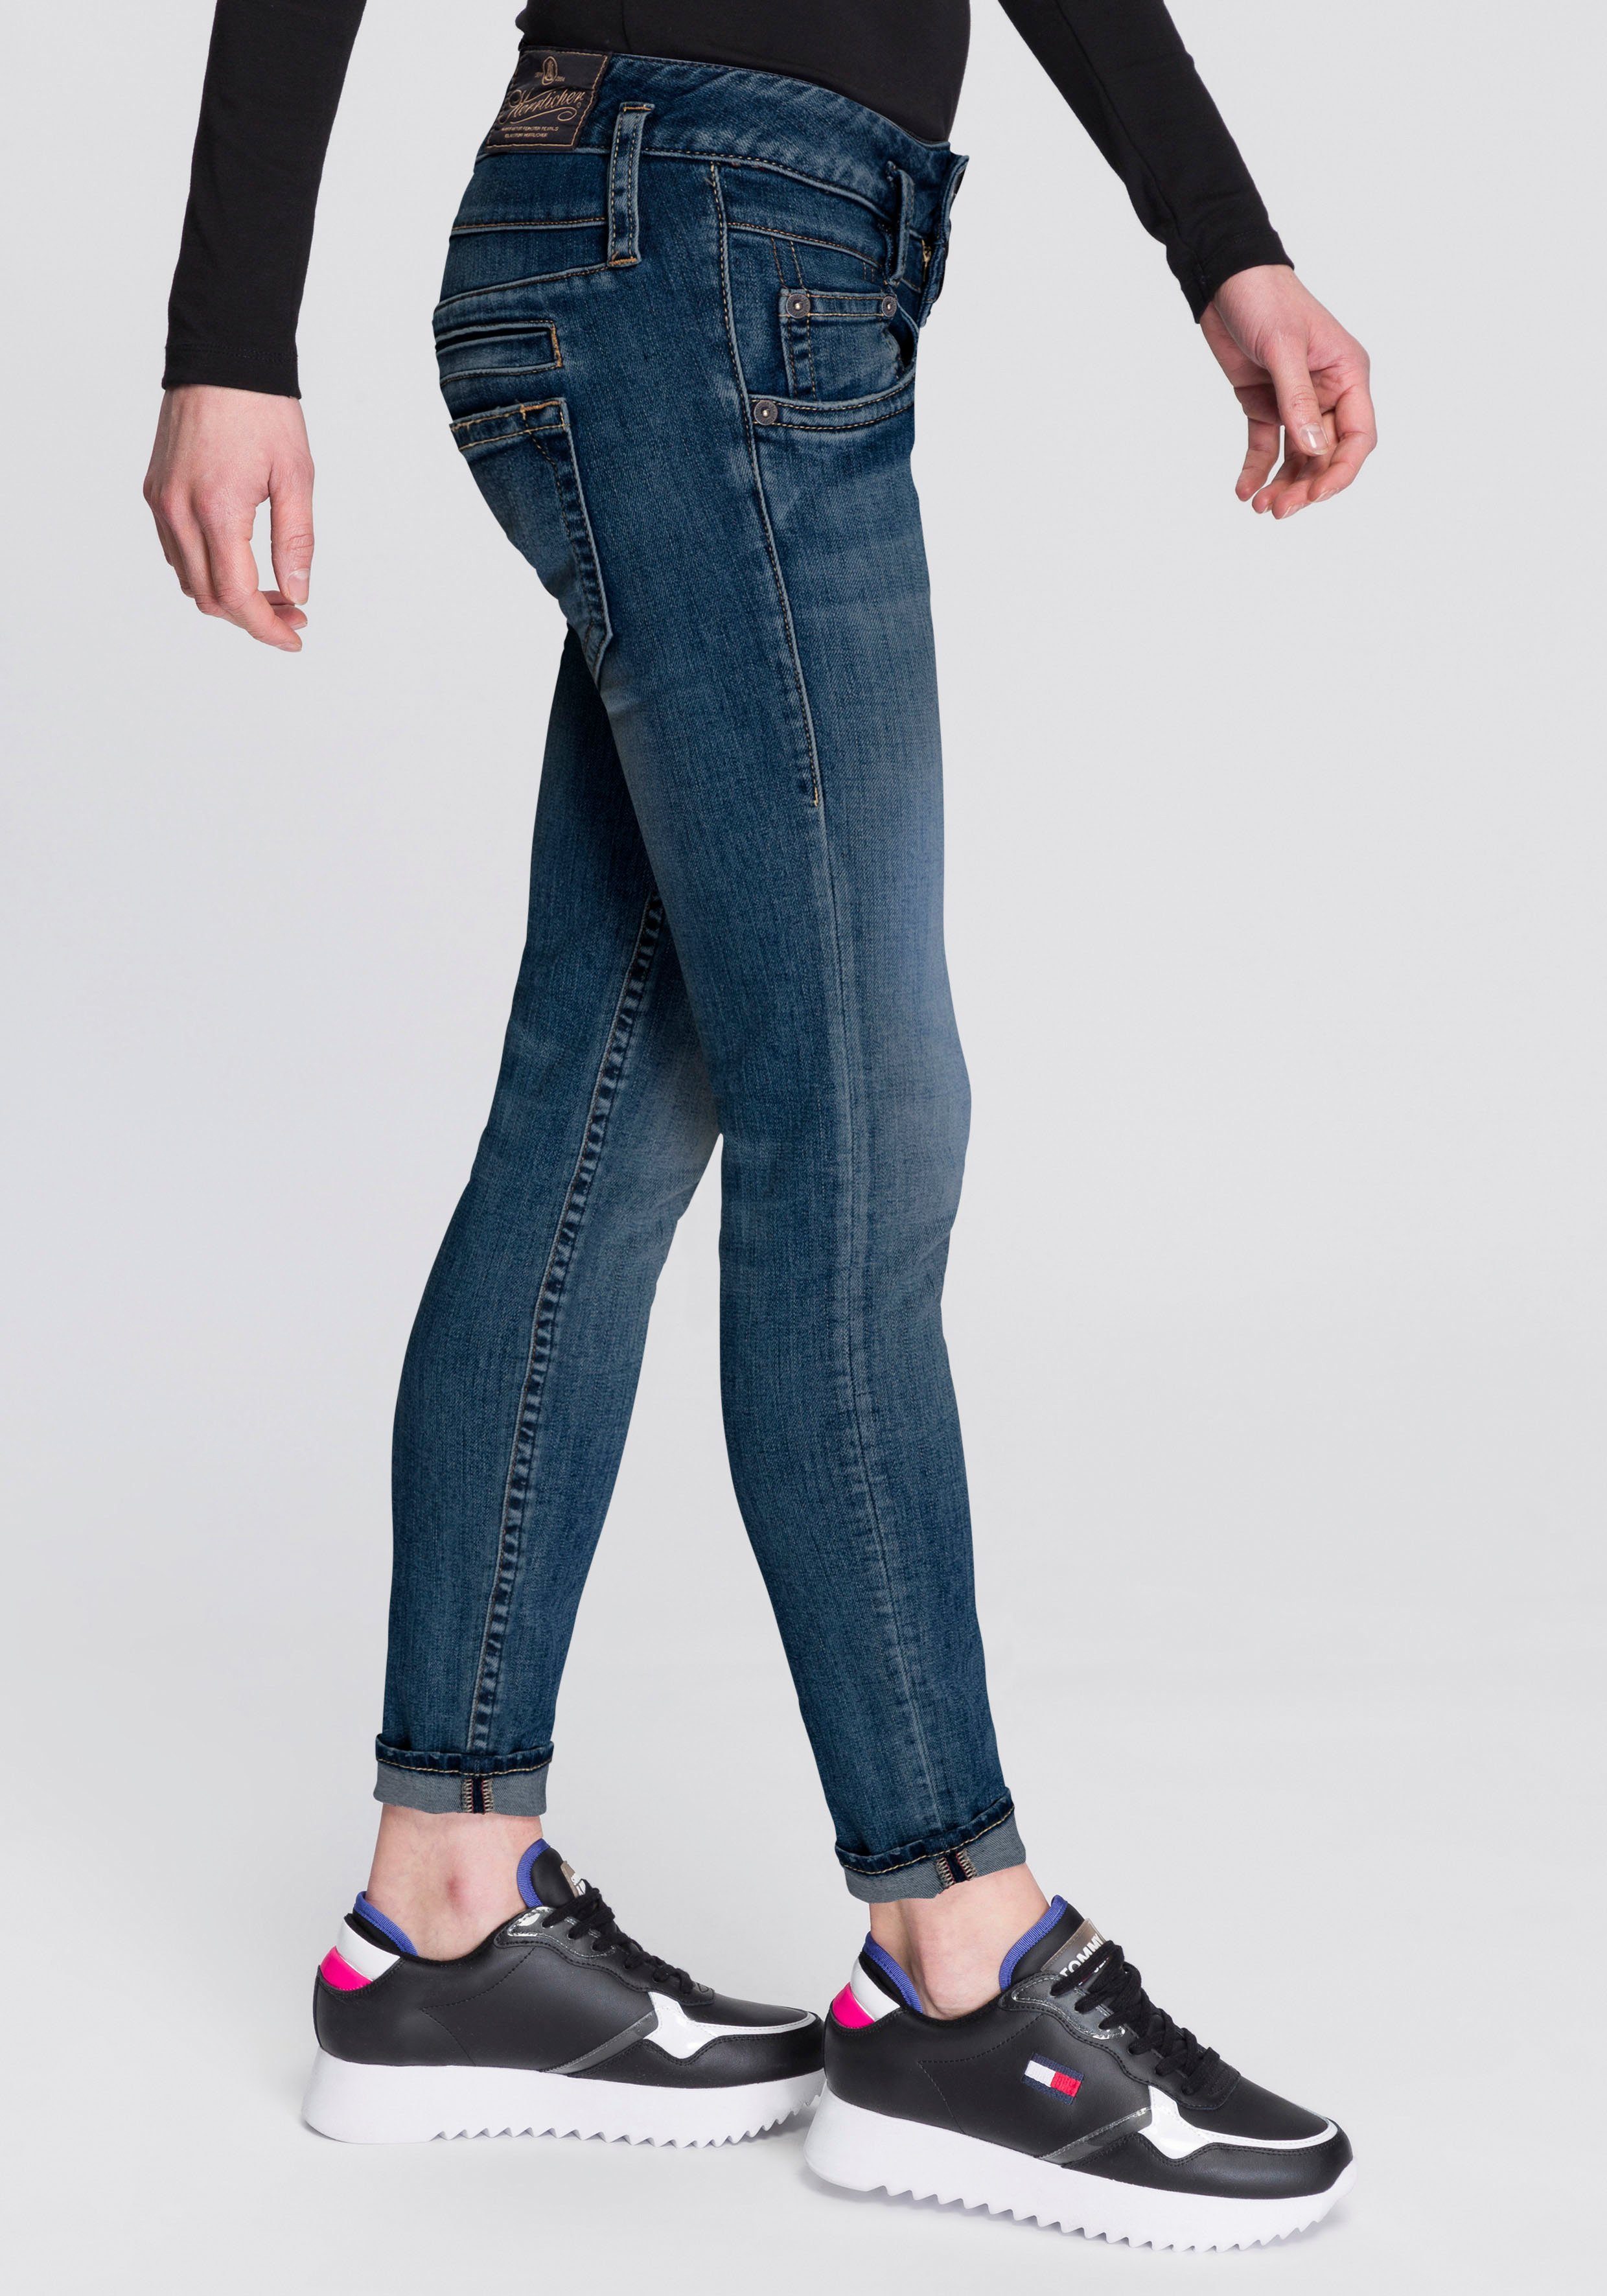 Damen Jeans Herrlicher Slim-fit-Jeans PITCH SLIM ORGANIC DENIM umweltfreundlich dank Kitotex Technology